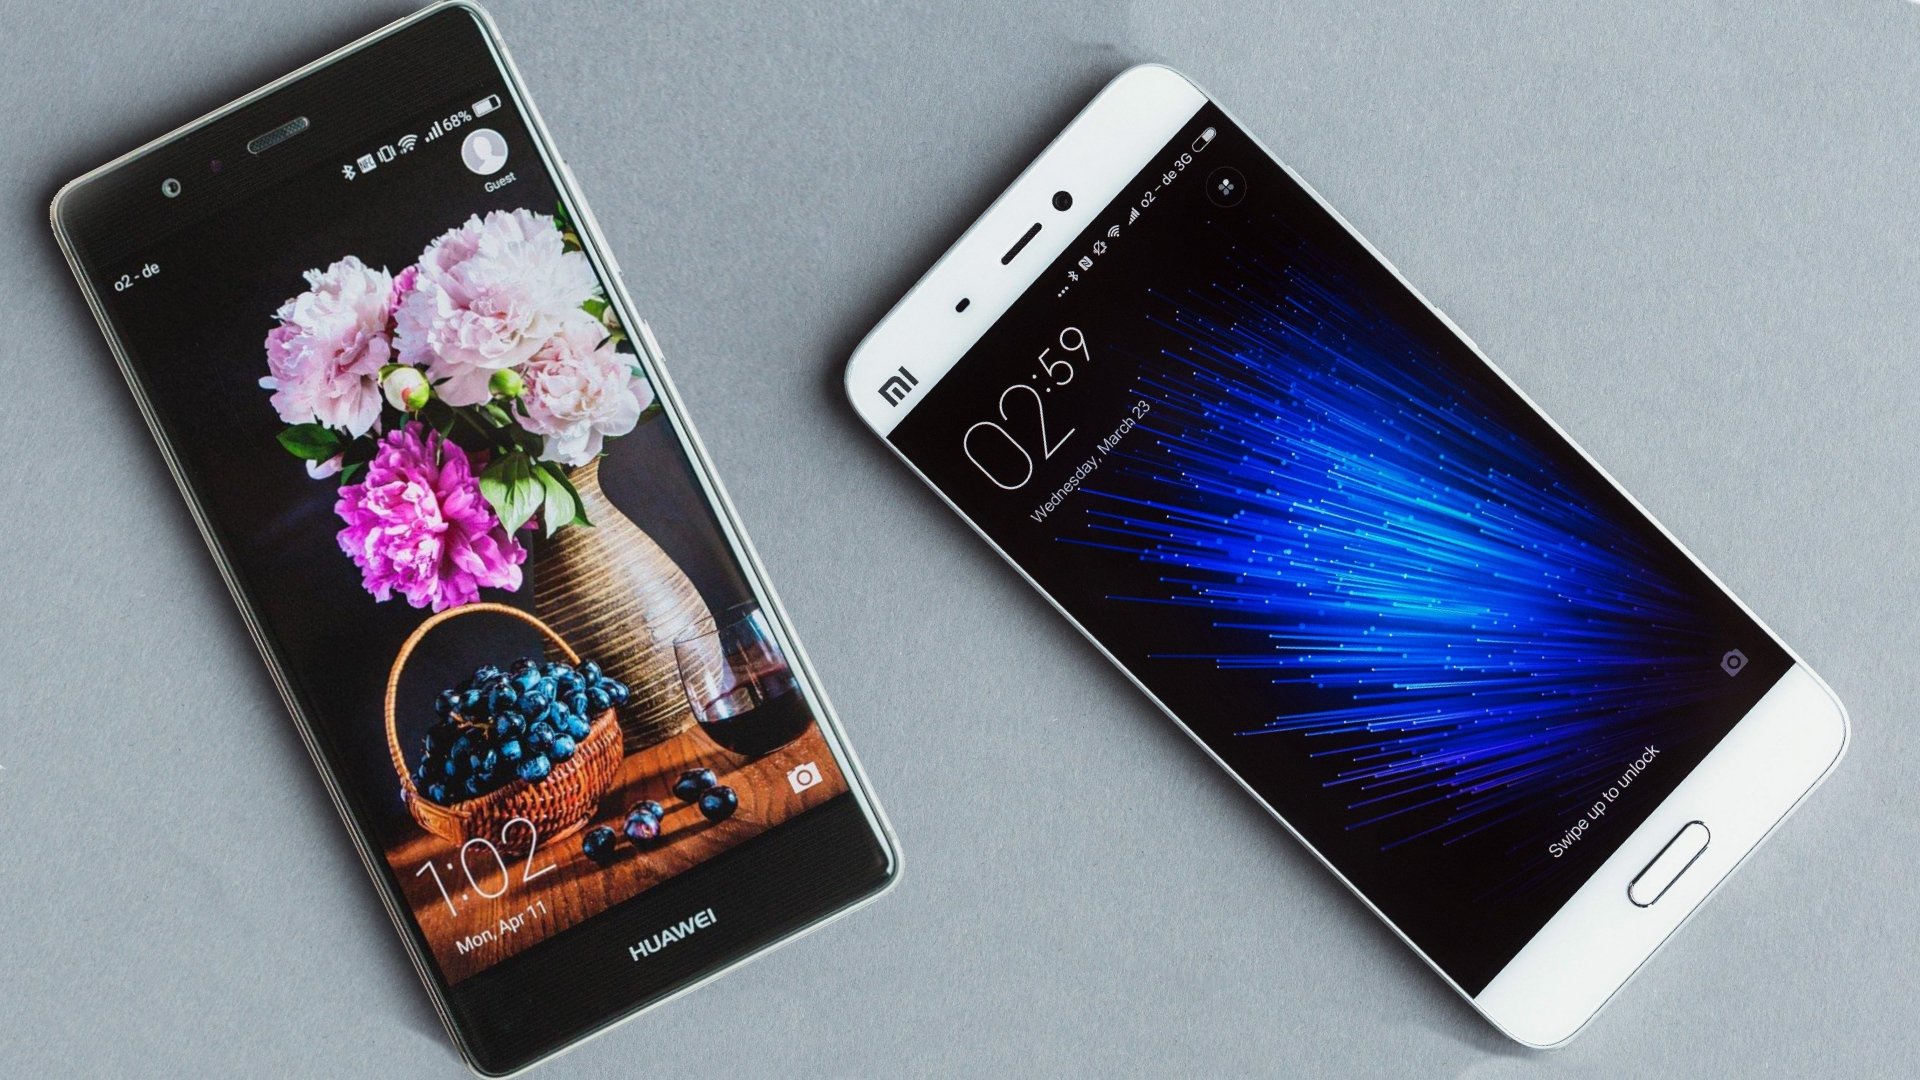 Huawei P9 против Xiaomi Mi 5: Какой производитель достиг зрелости?